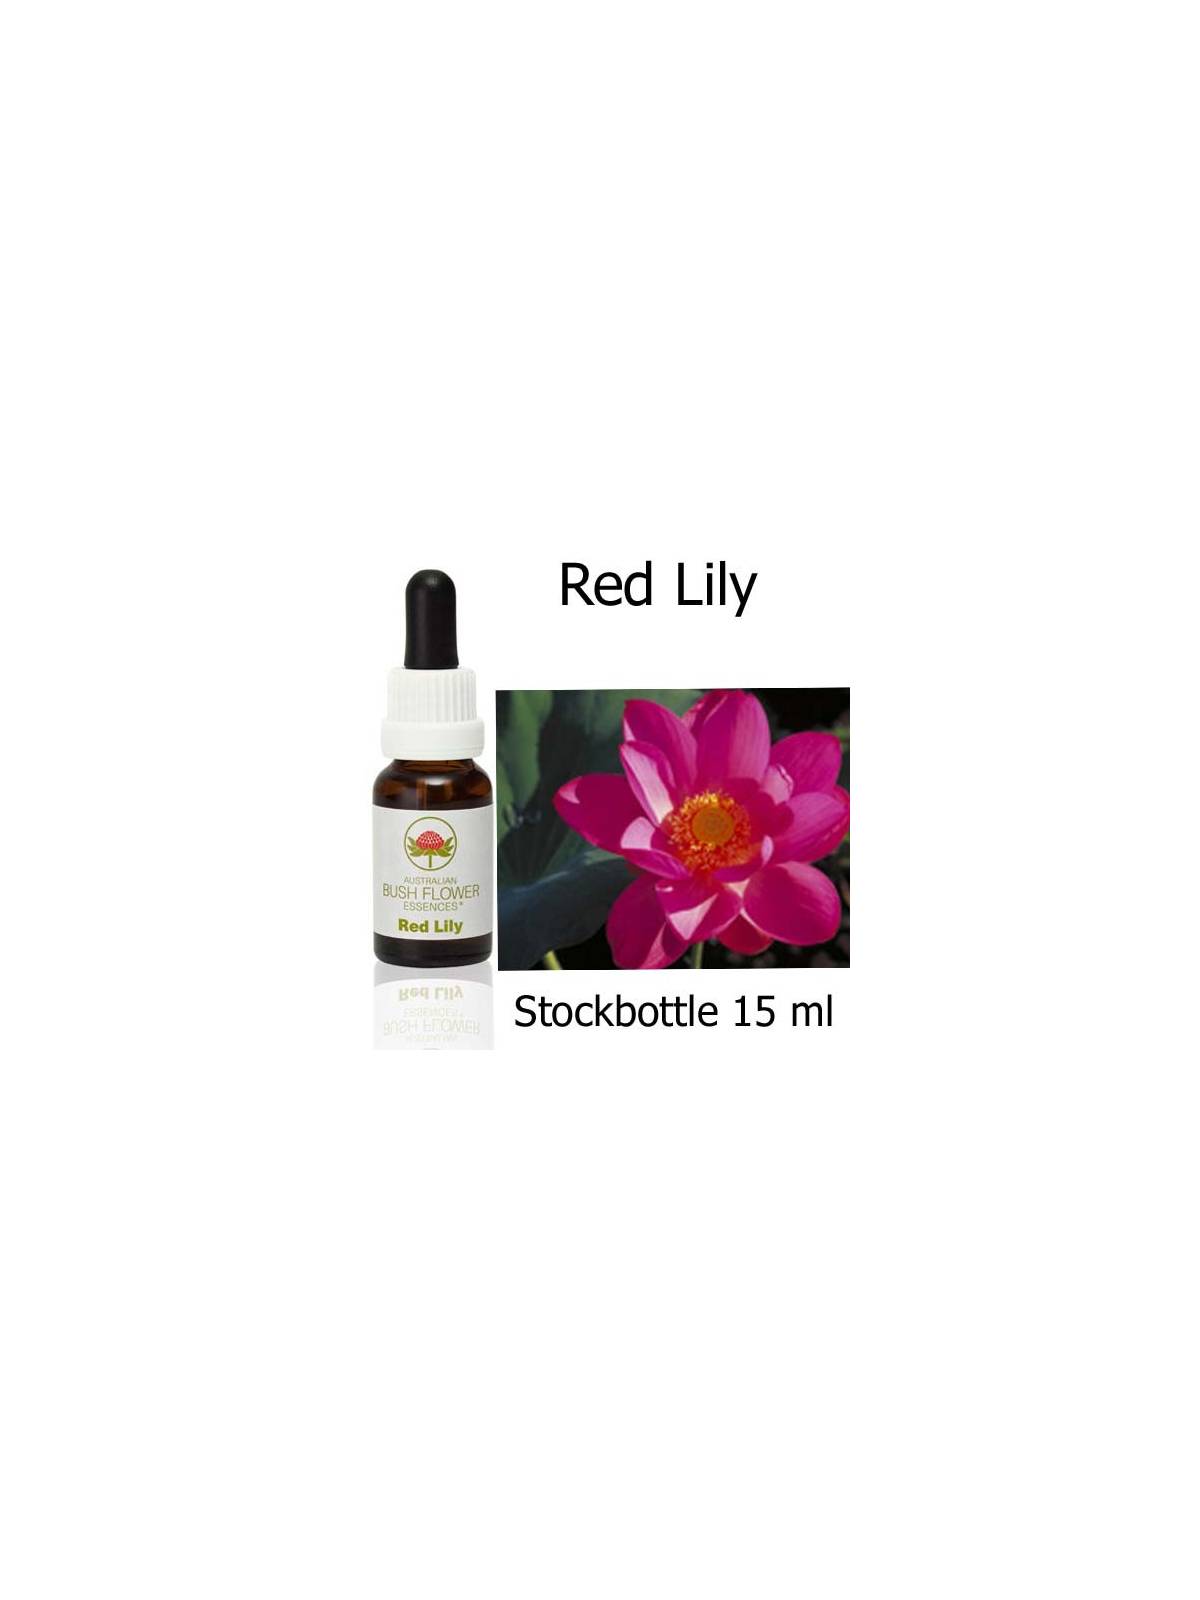 Red Lily Australian Bush Flower Essences stockbottles